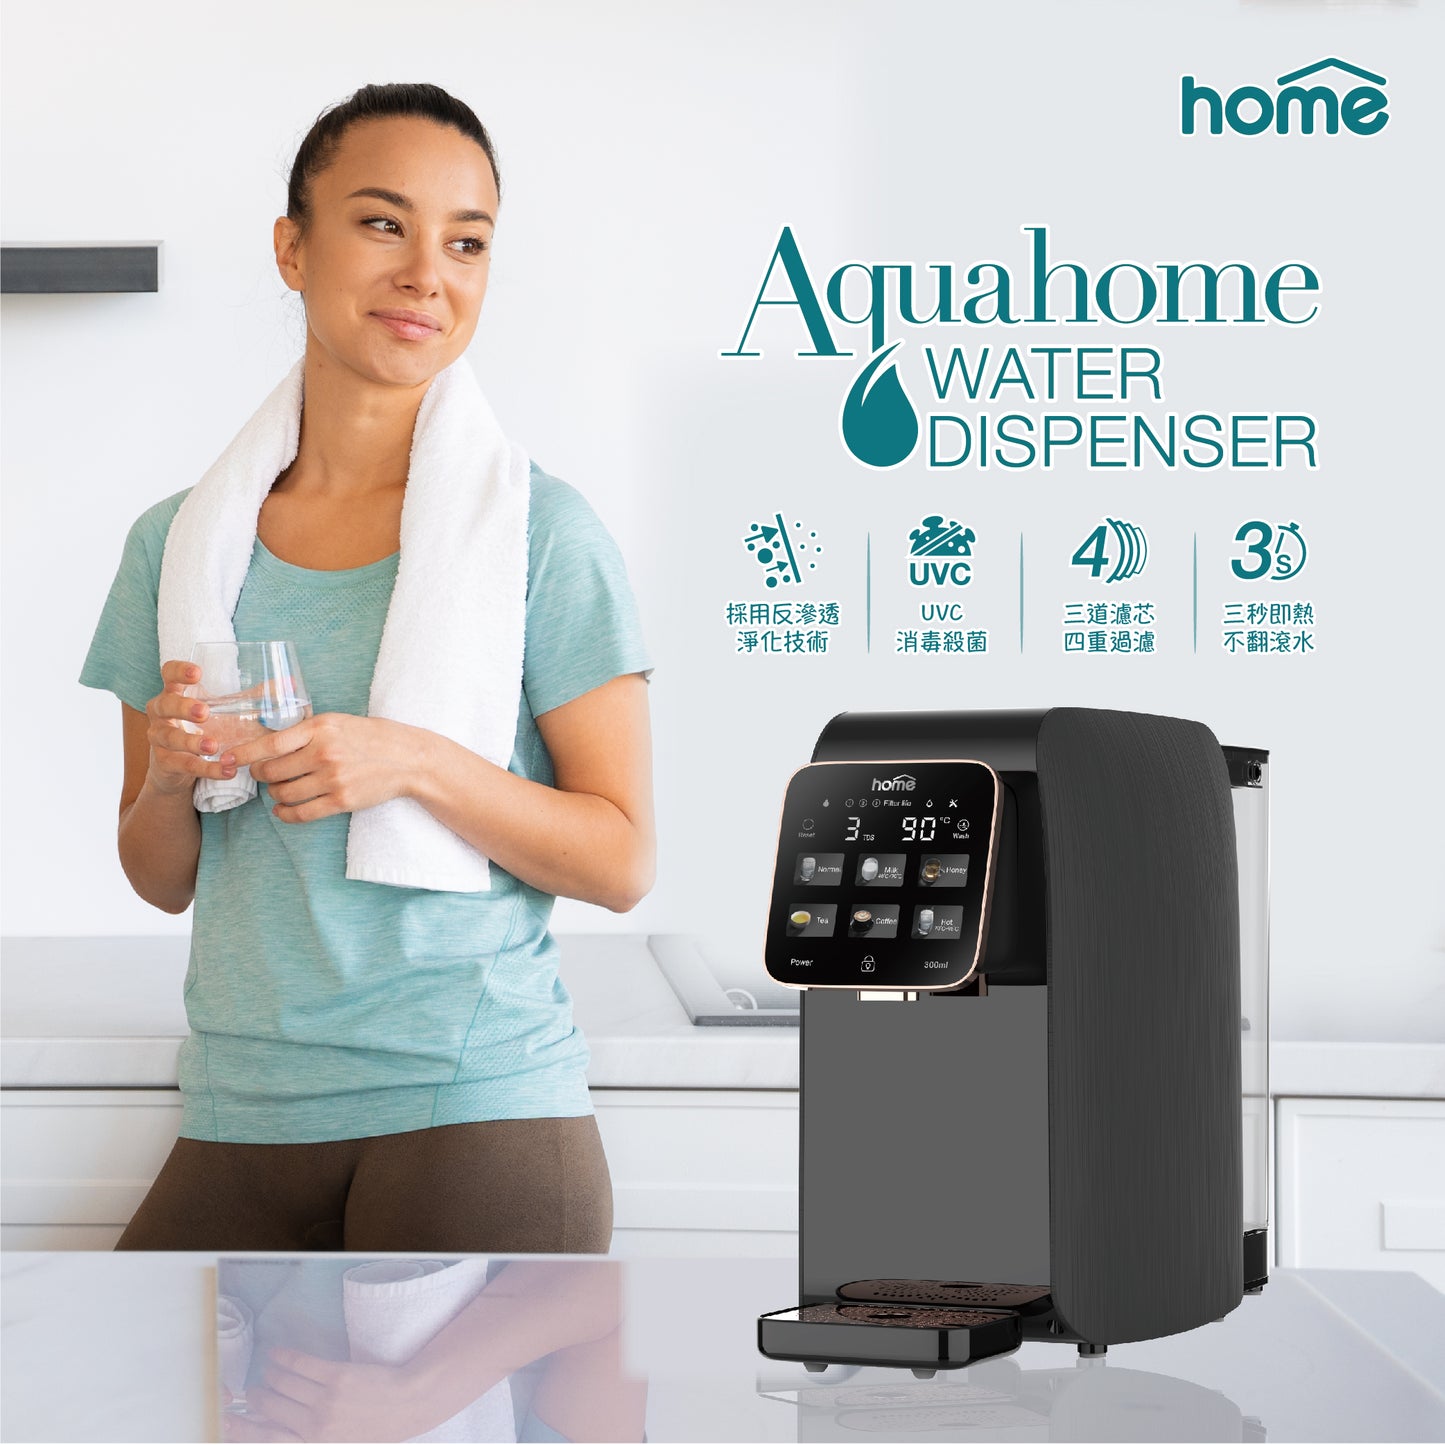 (Top Selling) Aquahome Water Dispenser